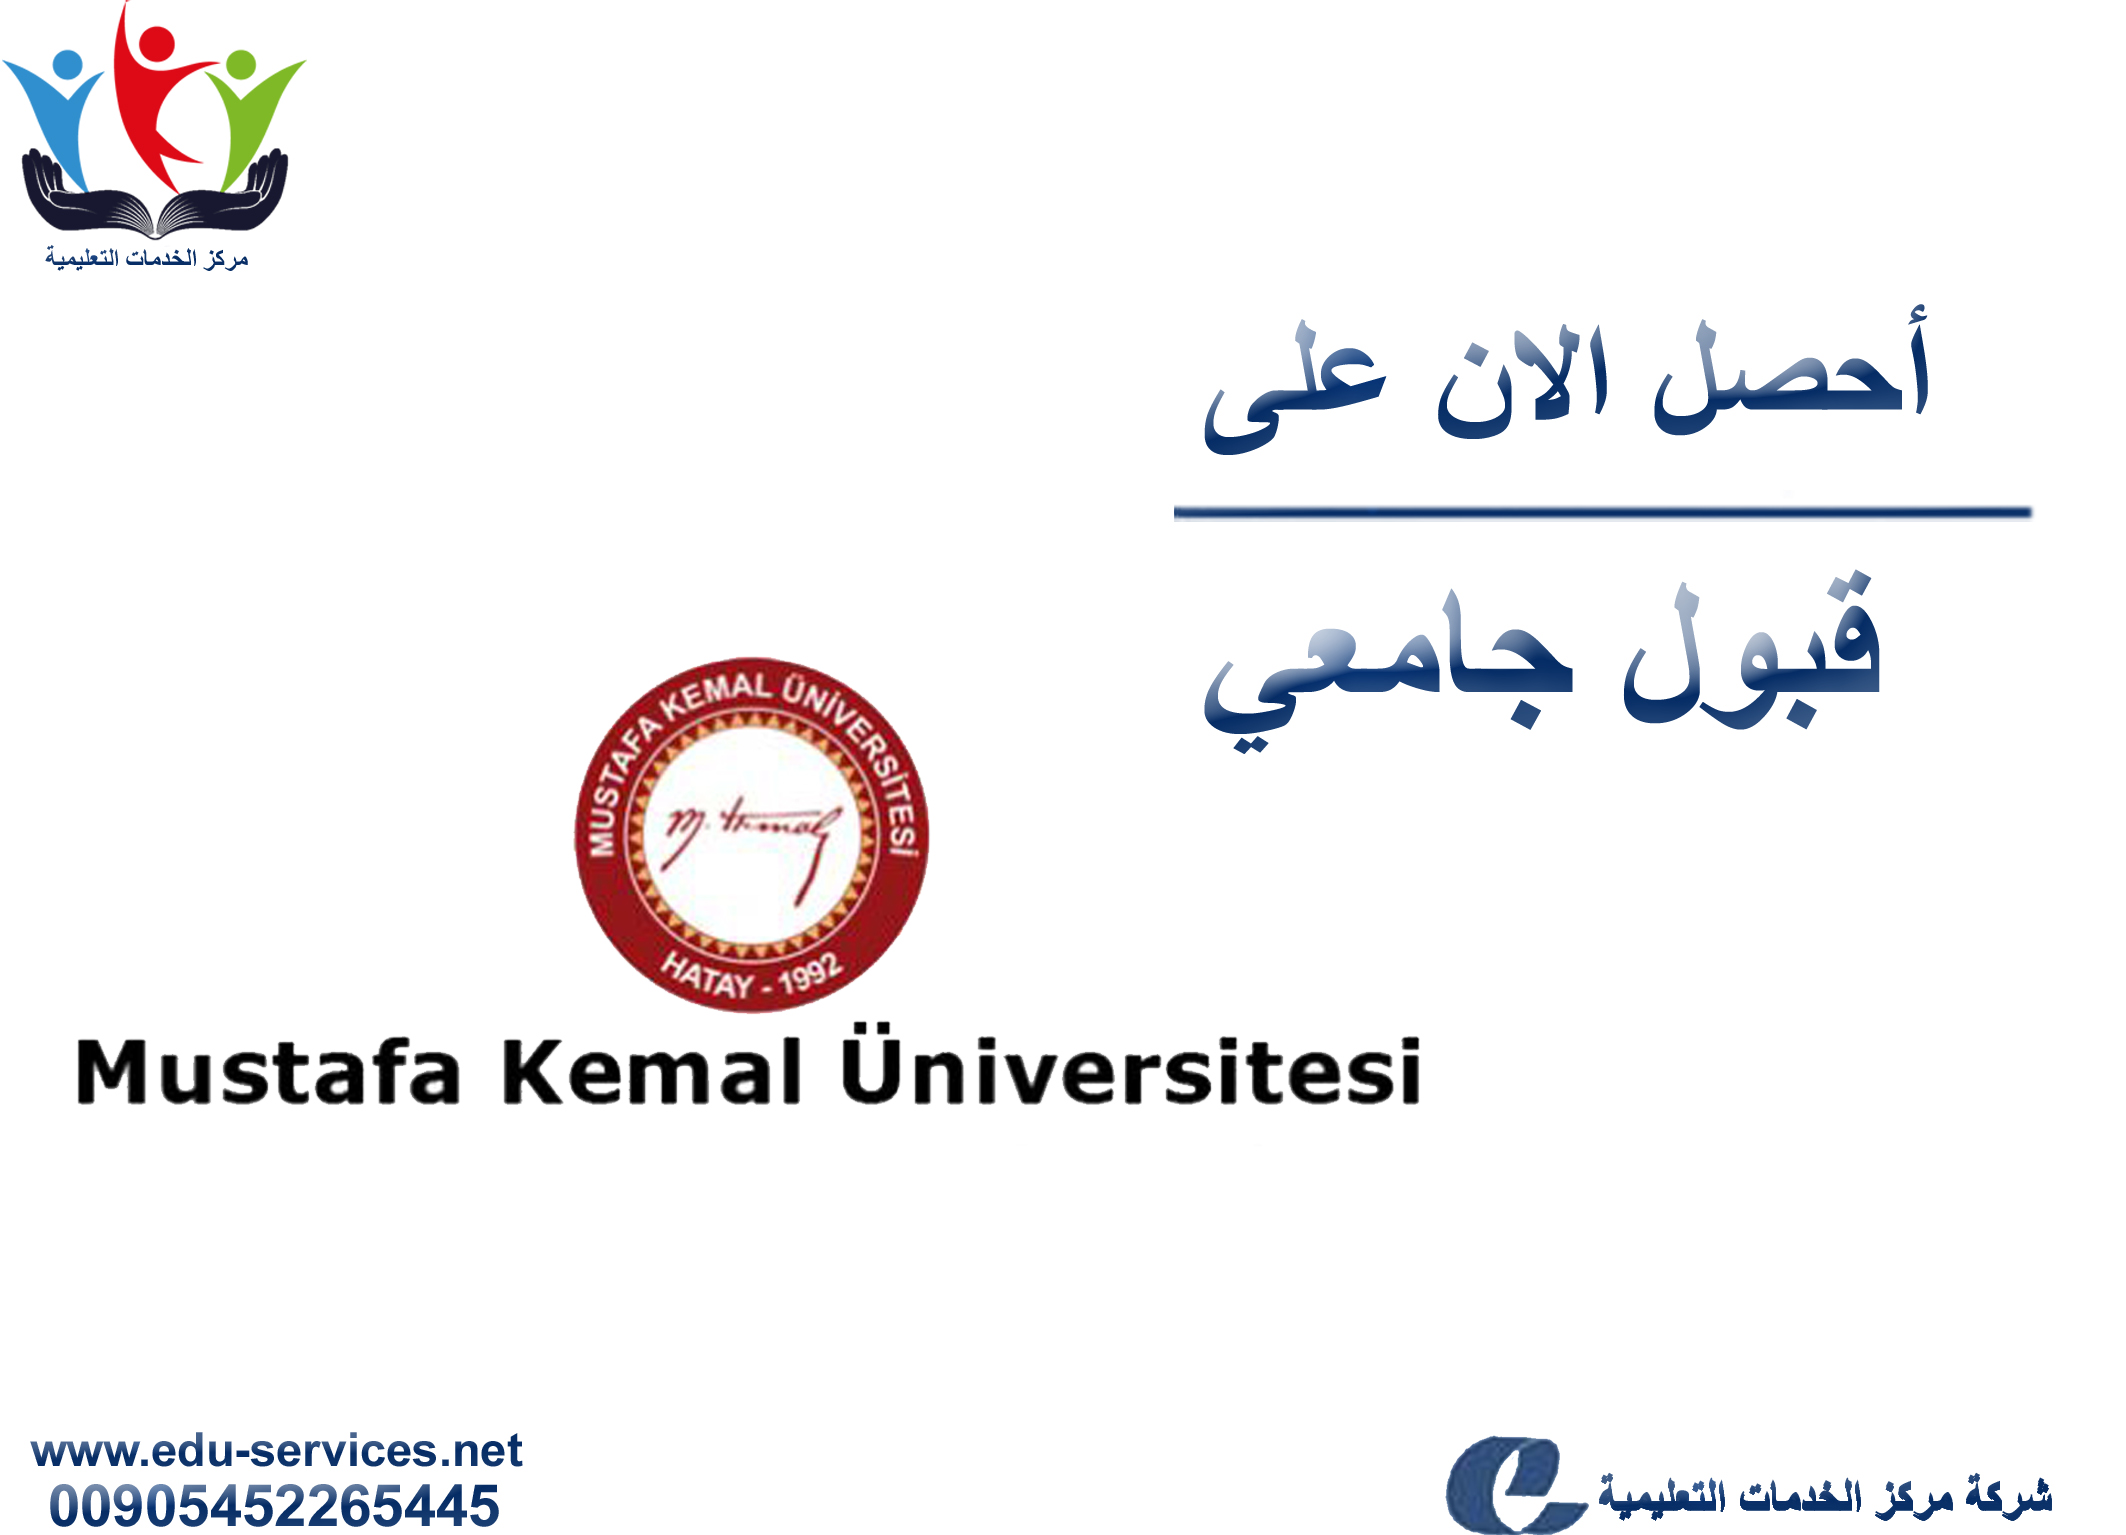 افتتاح التسجيل في جامعة مصطفى كمال للعام 2018-2019